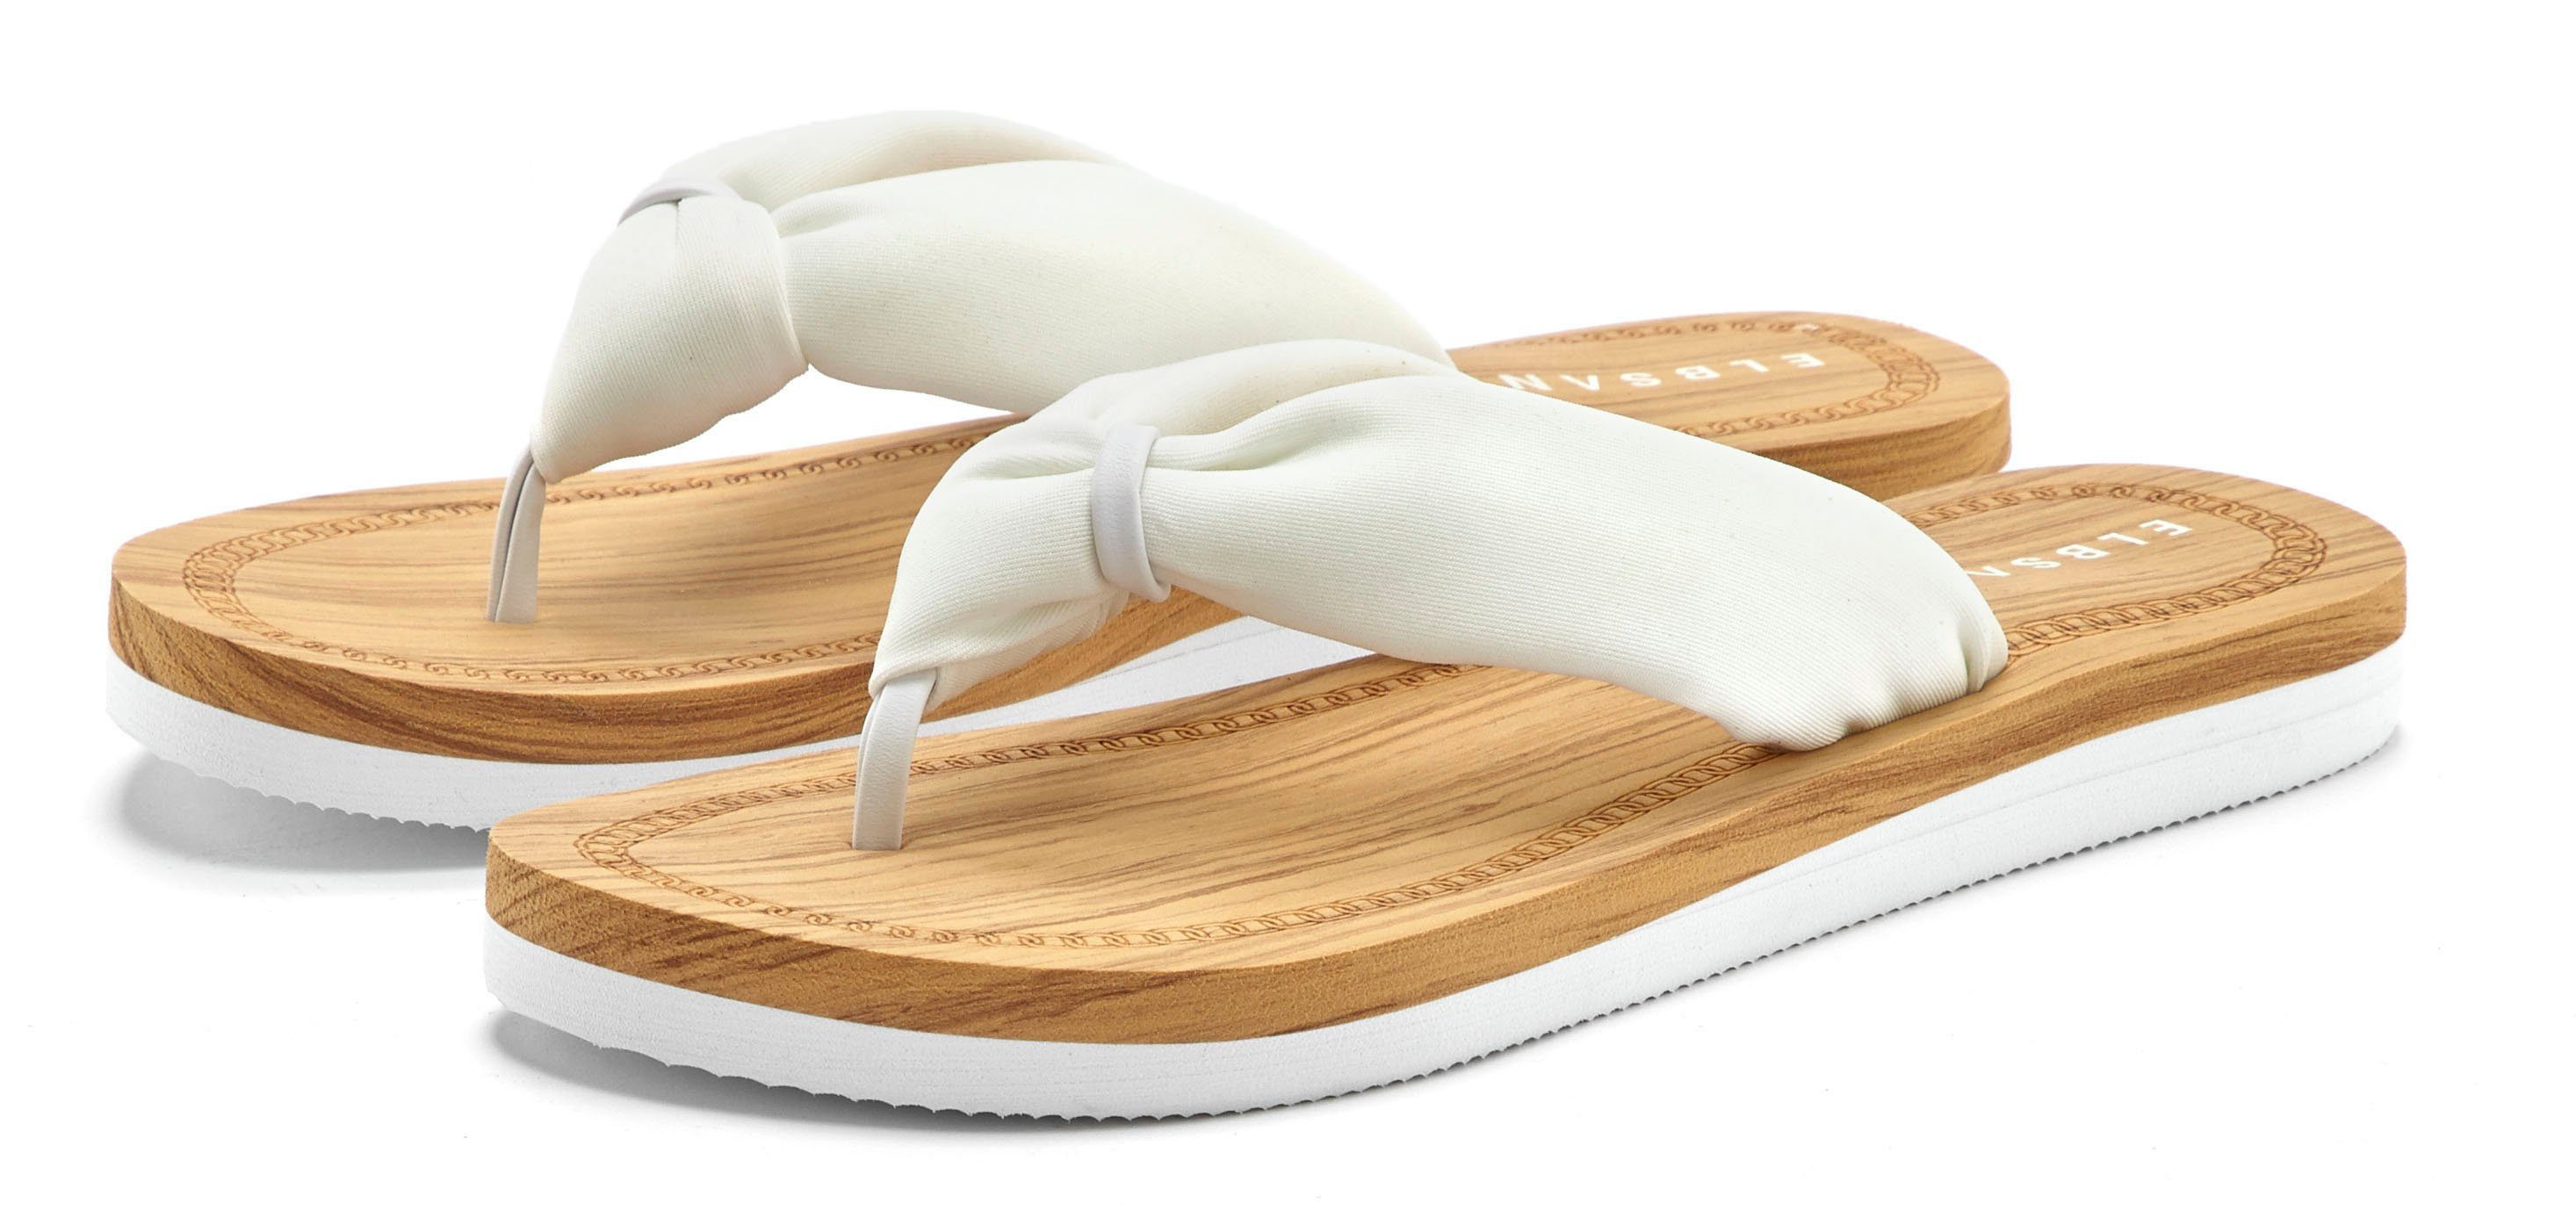 Elbsand Badezehentrenner Sandale, Pantolette, Badeschuh ultraleicht VEGAN weiß